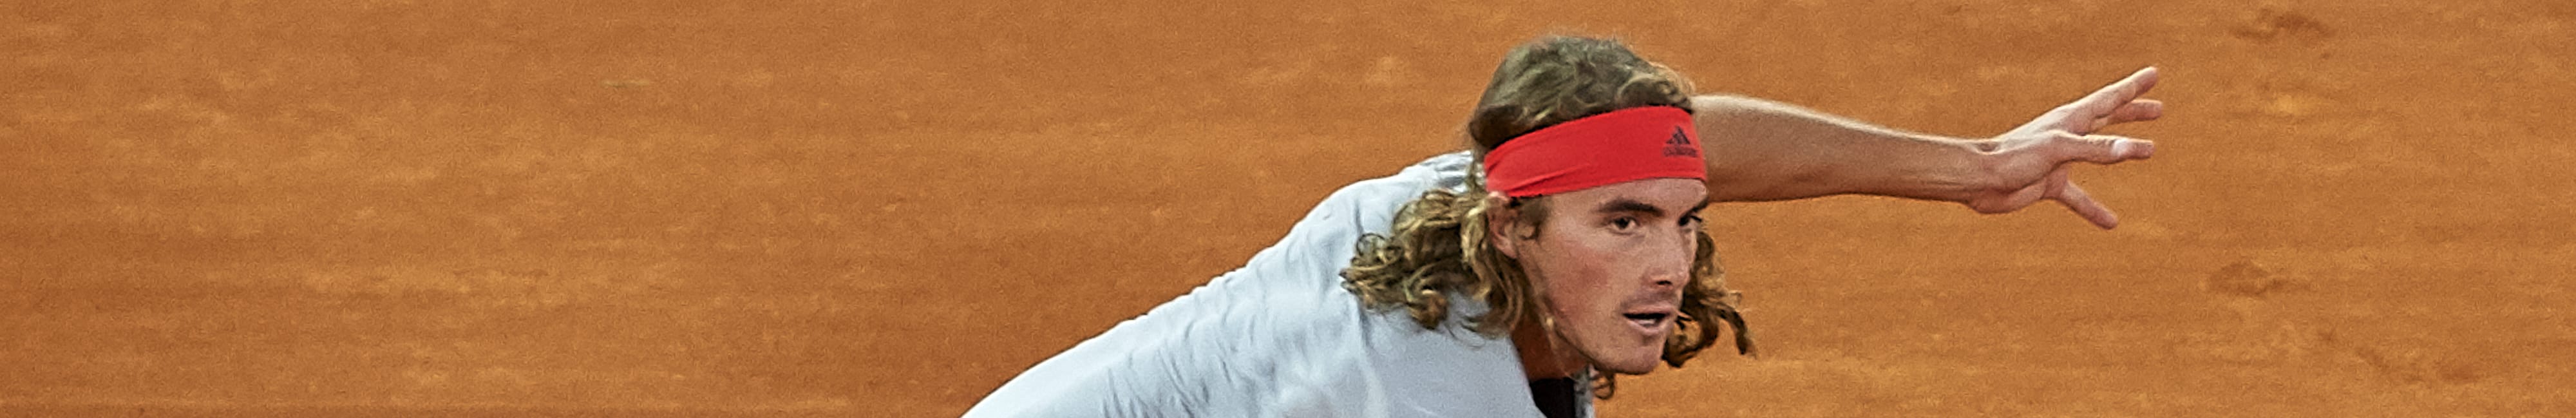 ATP Madrid, Tsitsipas può battere Nole e vincere il primo Masters 1000 in carriera